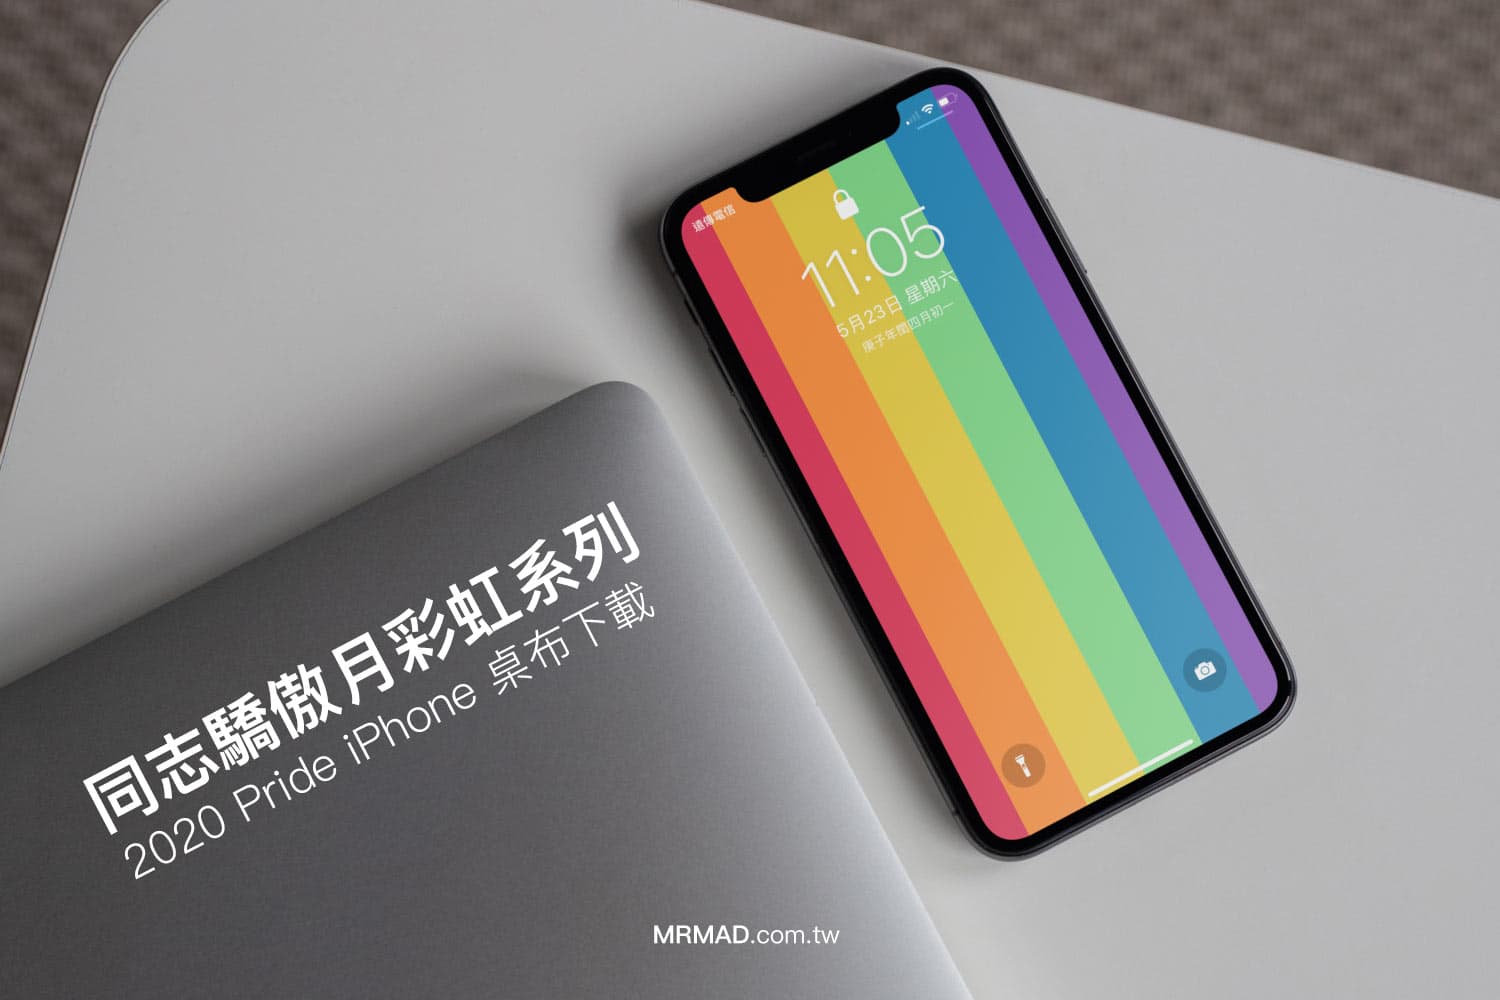 同志驕傲月彩虹系列 2020 Pride iPhone 桌布下載